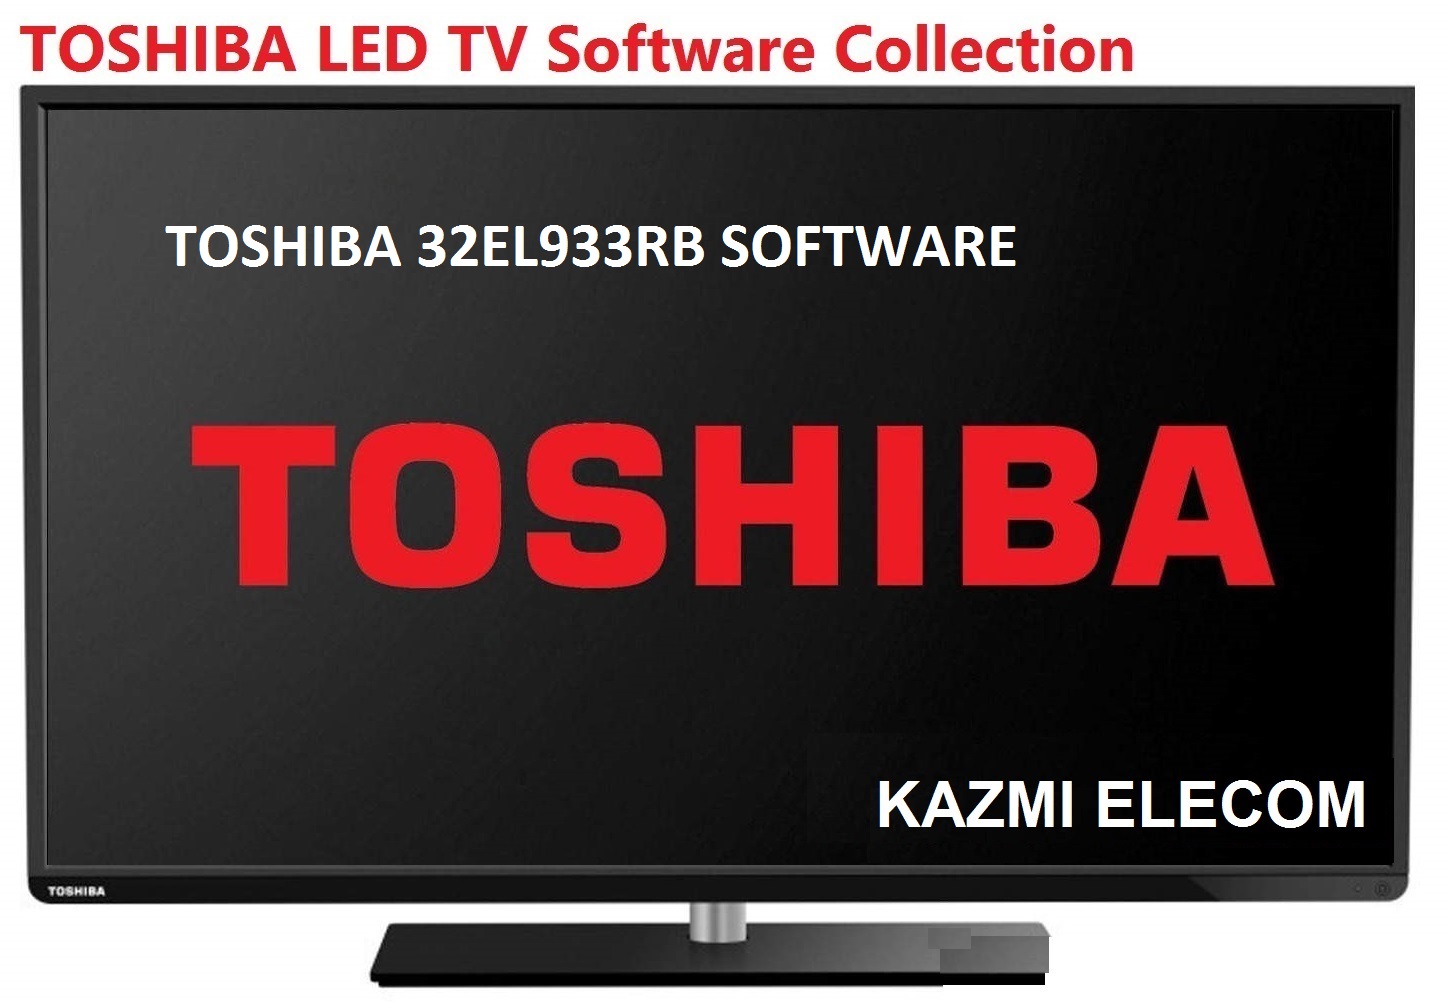 Toshiba 32El933Rb